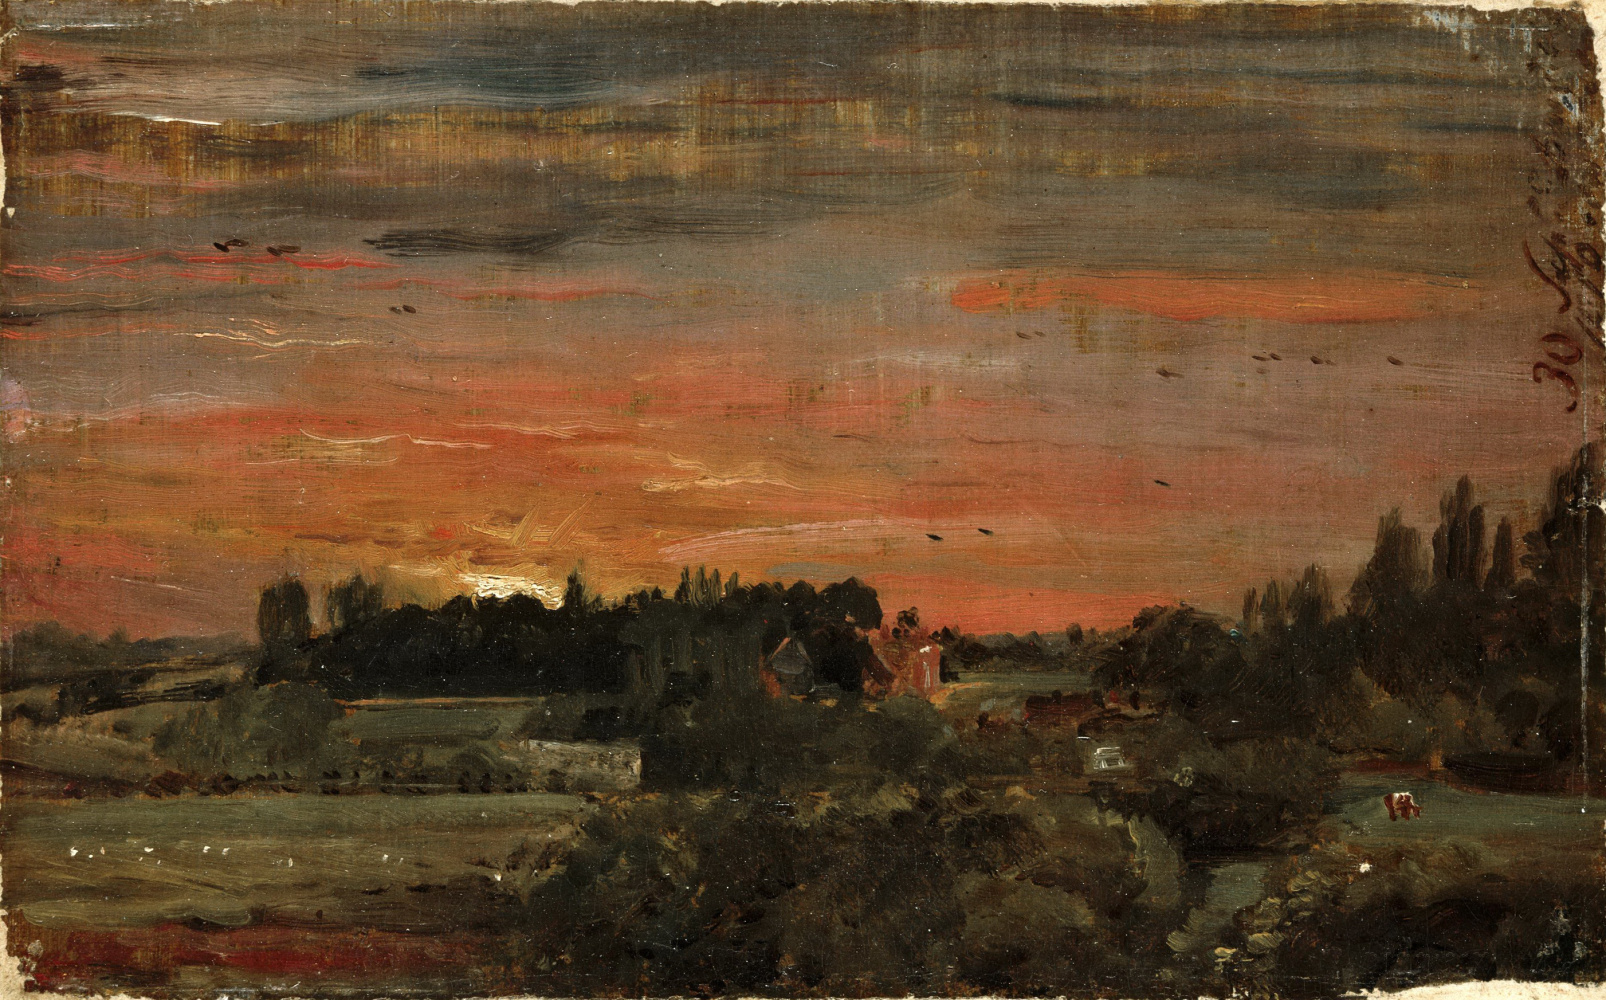 康斯坦布尔油画高清大图下载 (152)
